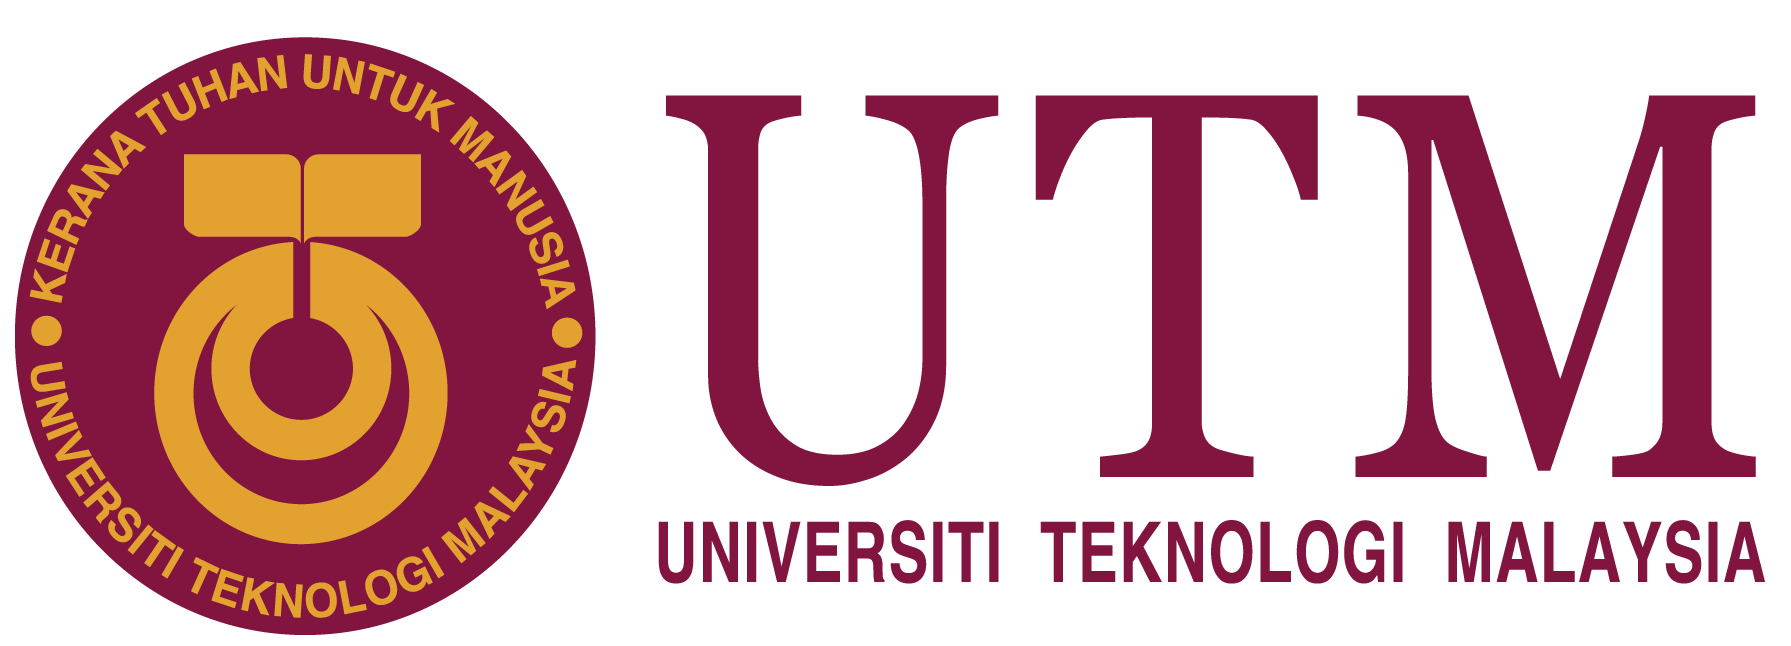 UTM-logo-png.png